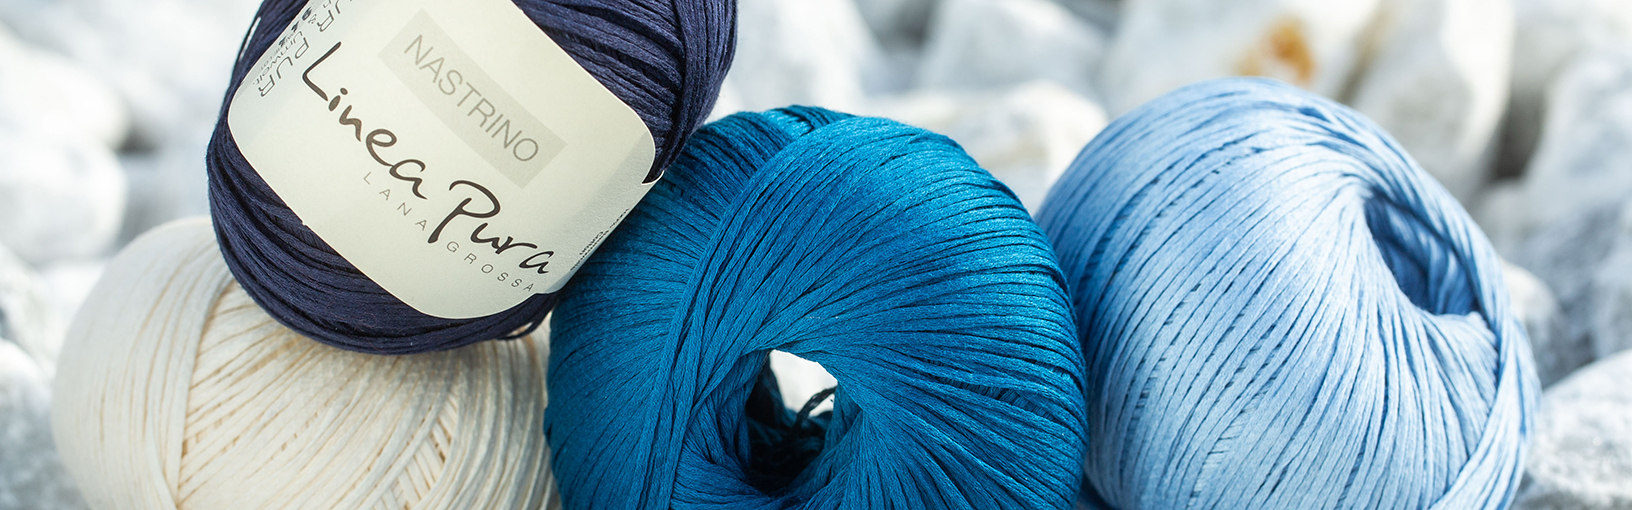 Hilos de alta calidad para tejer, crochet y fieltro Hilos Lana Grossa | Hilos Bobbel